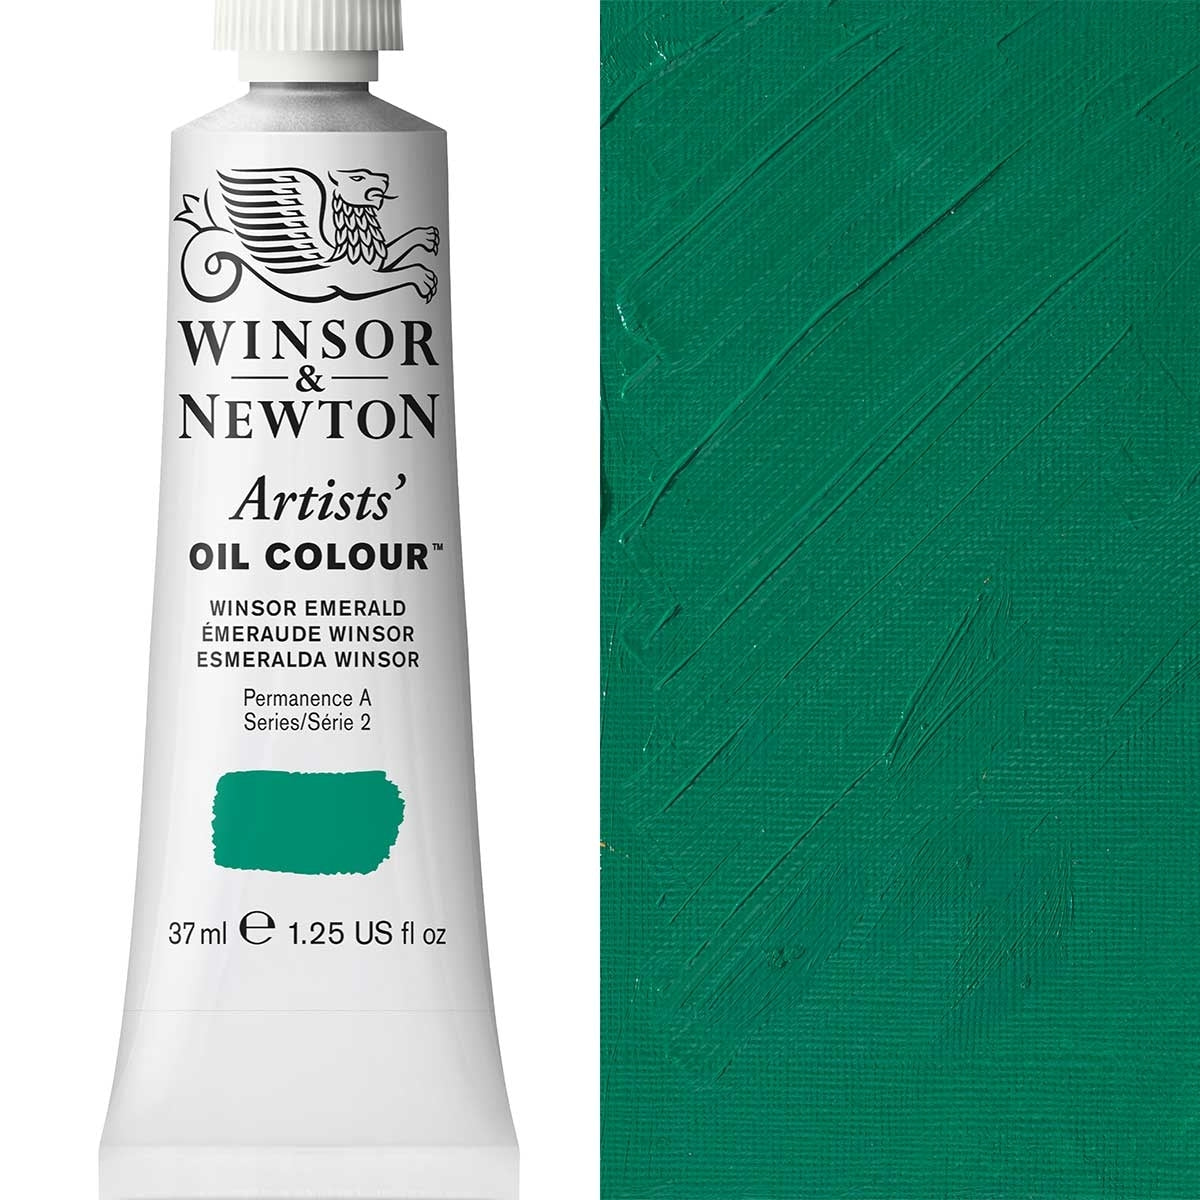 Winsor et Newton - Couleur d'huile des artistes - 37 ml - Winsor Emerald